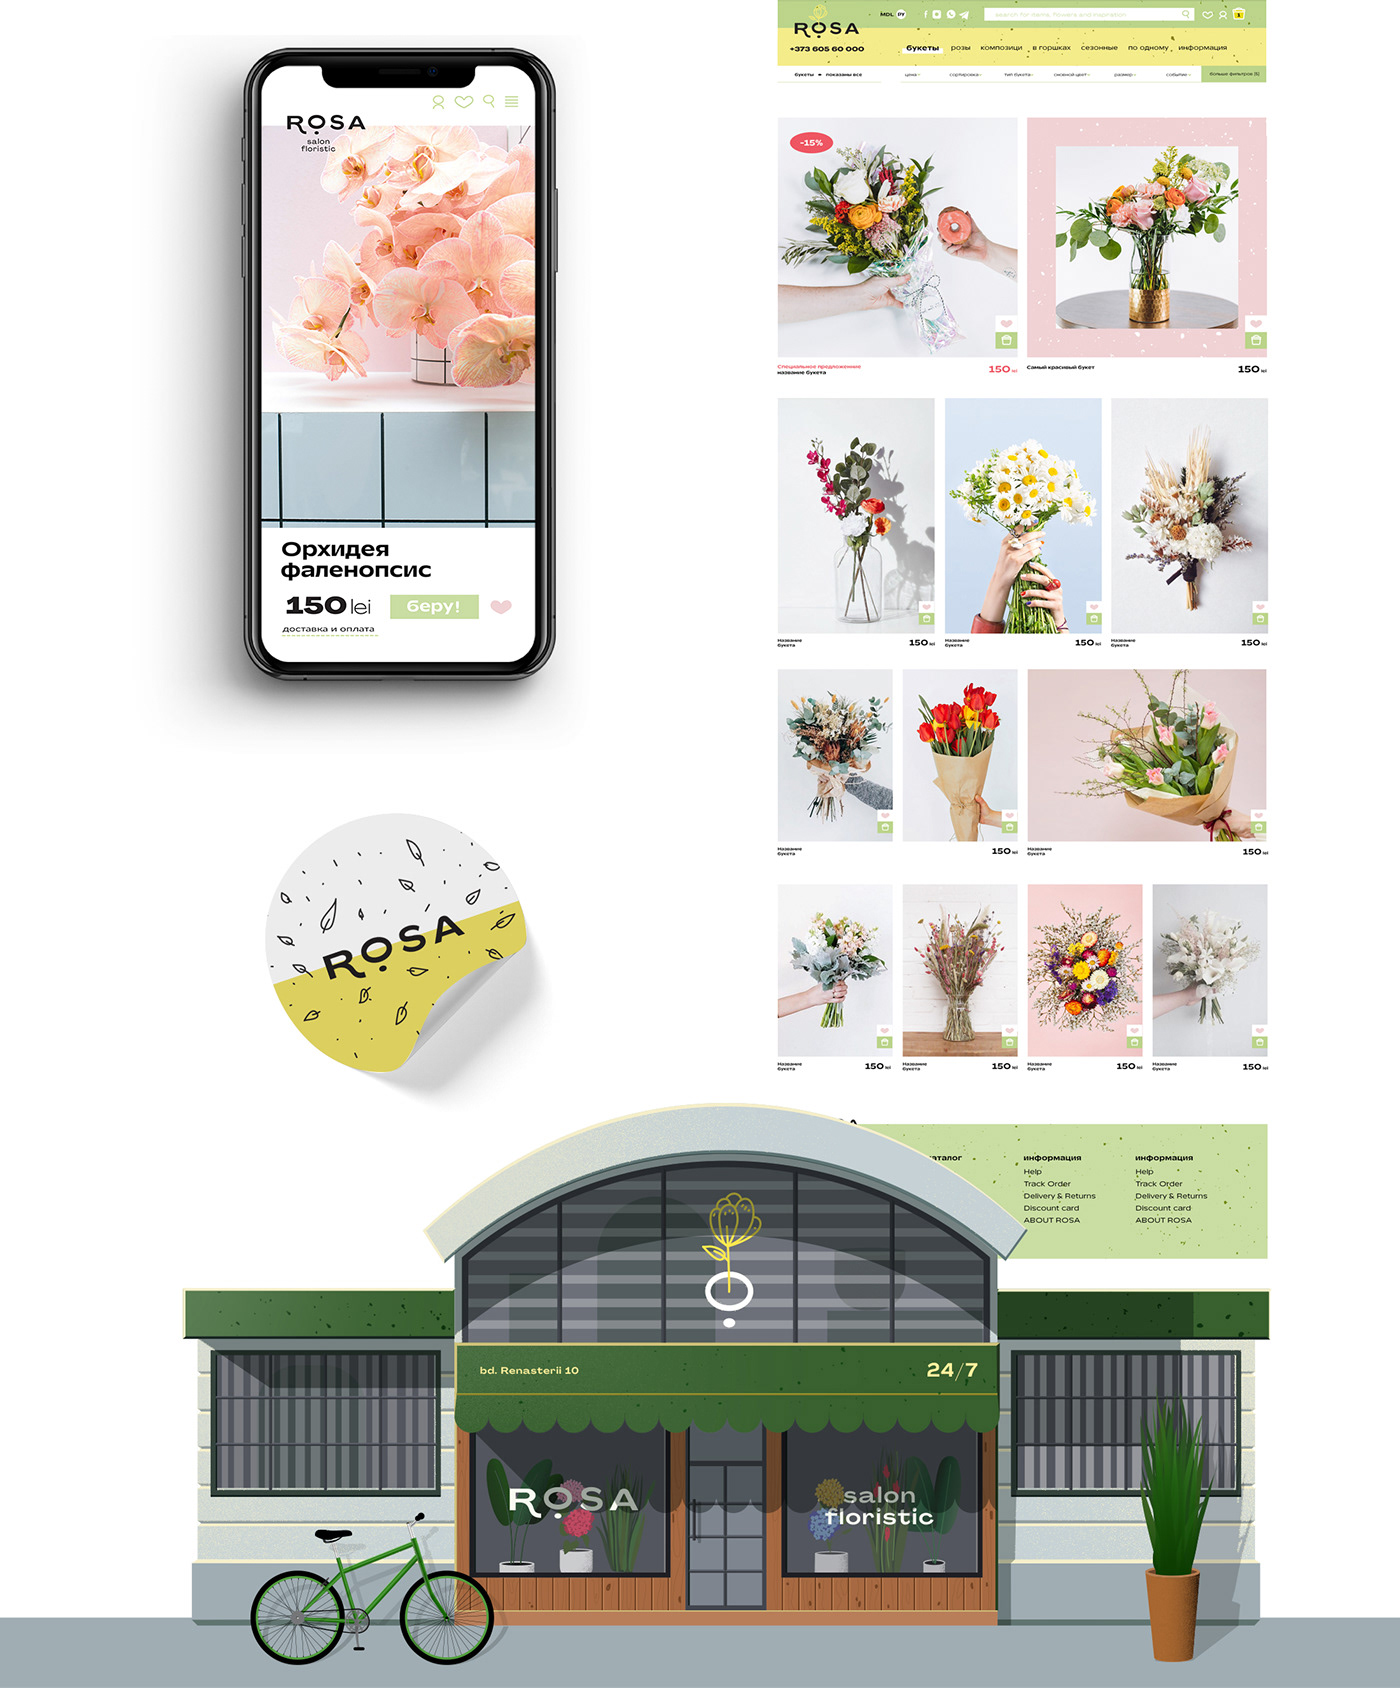 ROSA花店品牌视觉设计